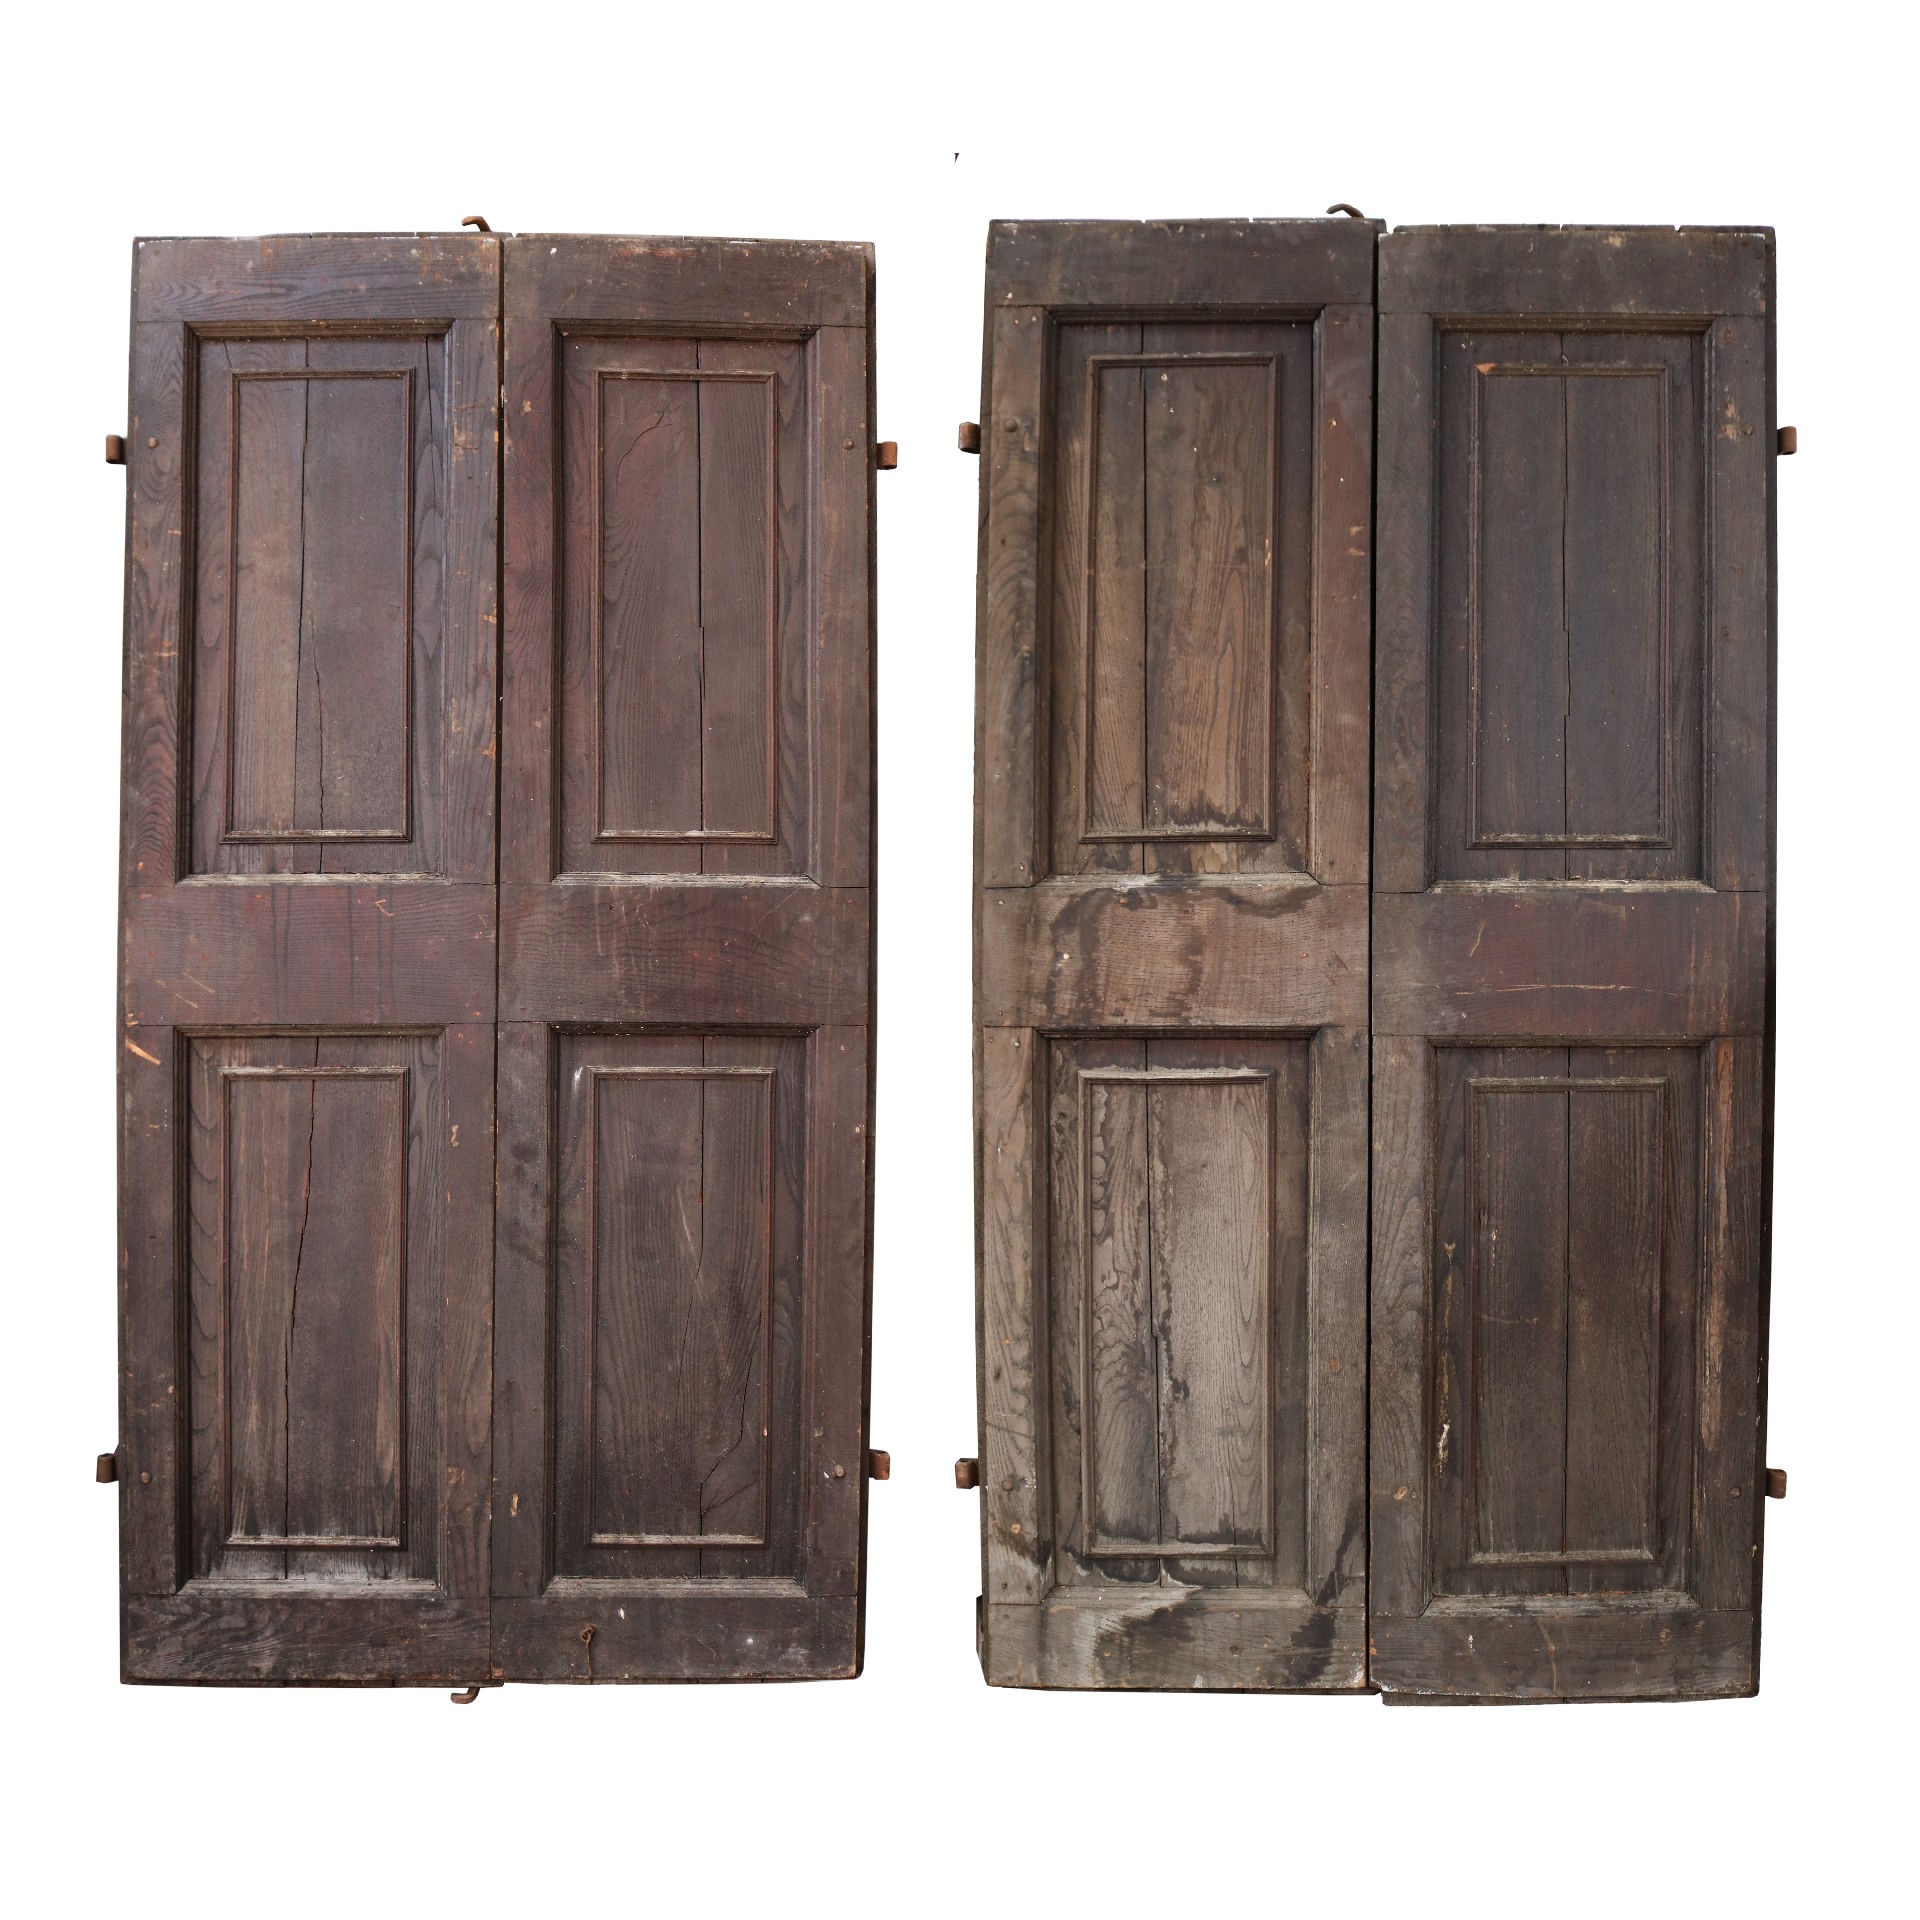 Antica coppia di portoni in legno.  - Porte Rare - Porte Antiche - Prodotti - Antichità Fiorillo